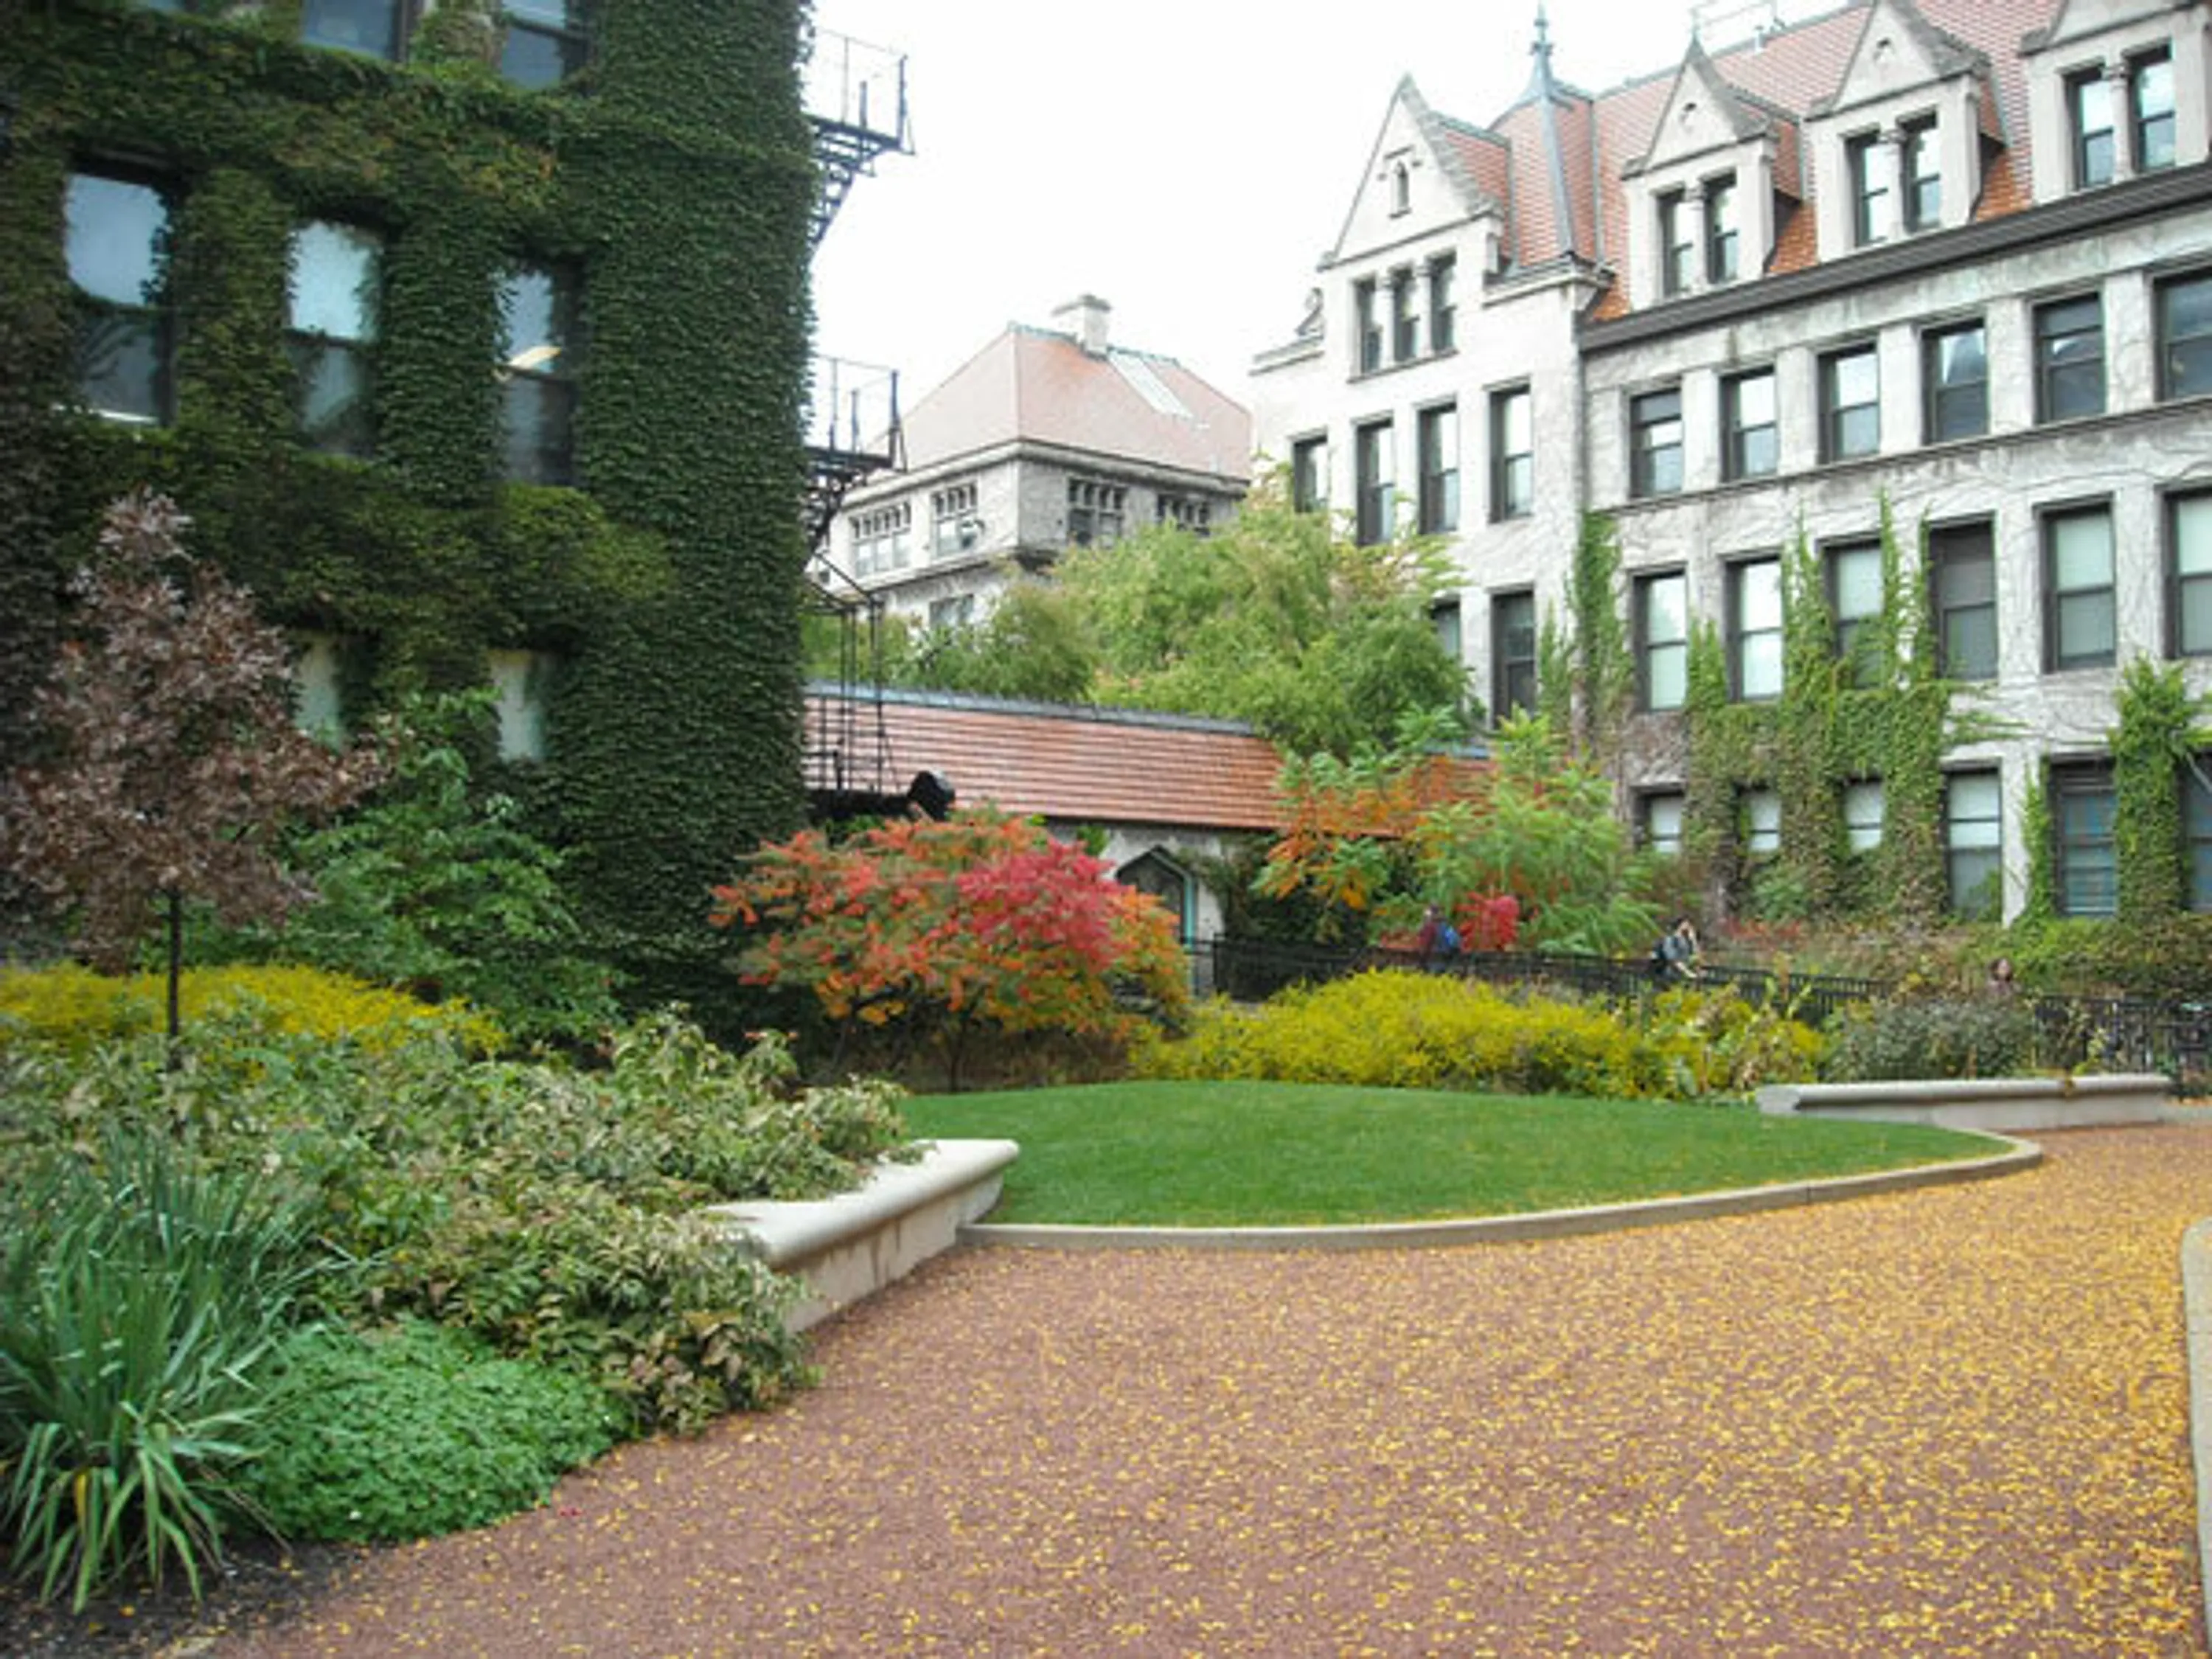 5 hull court garden after gardens walkways university blog hoerrschaudt